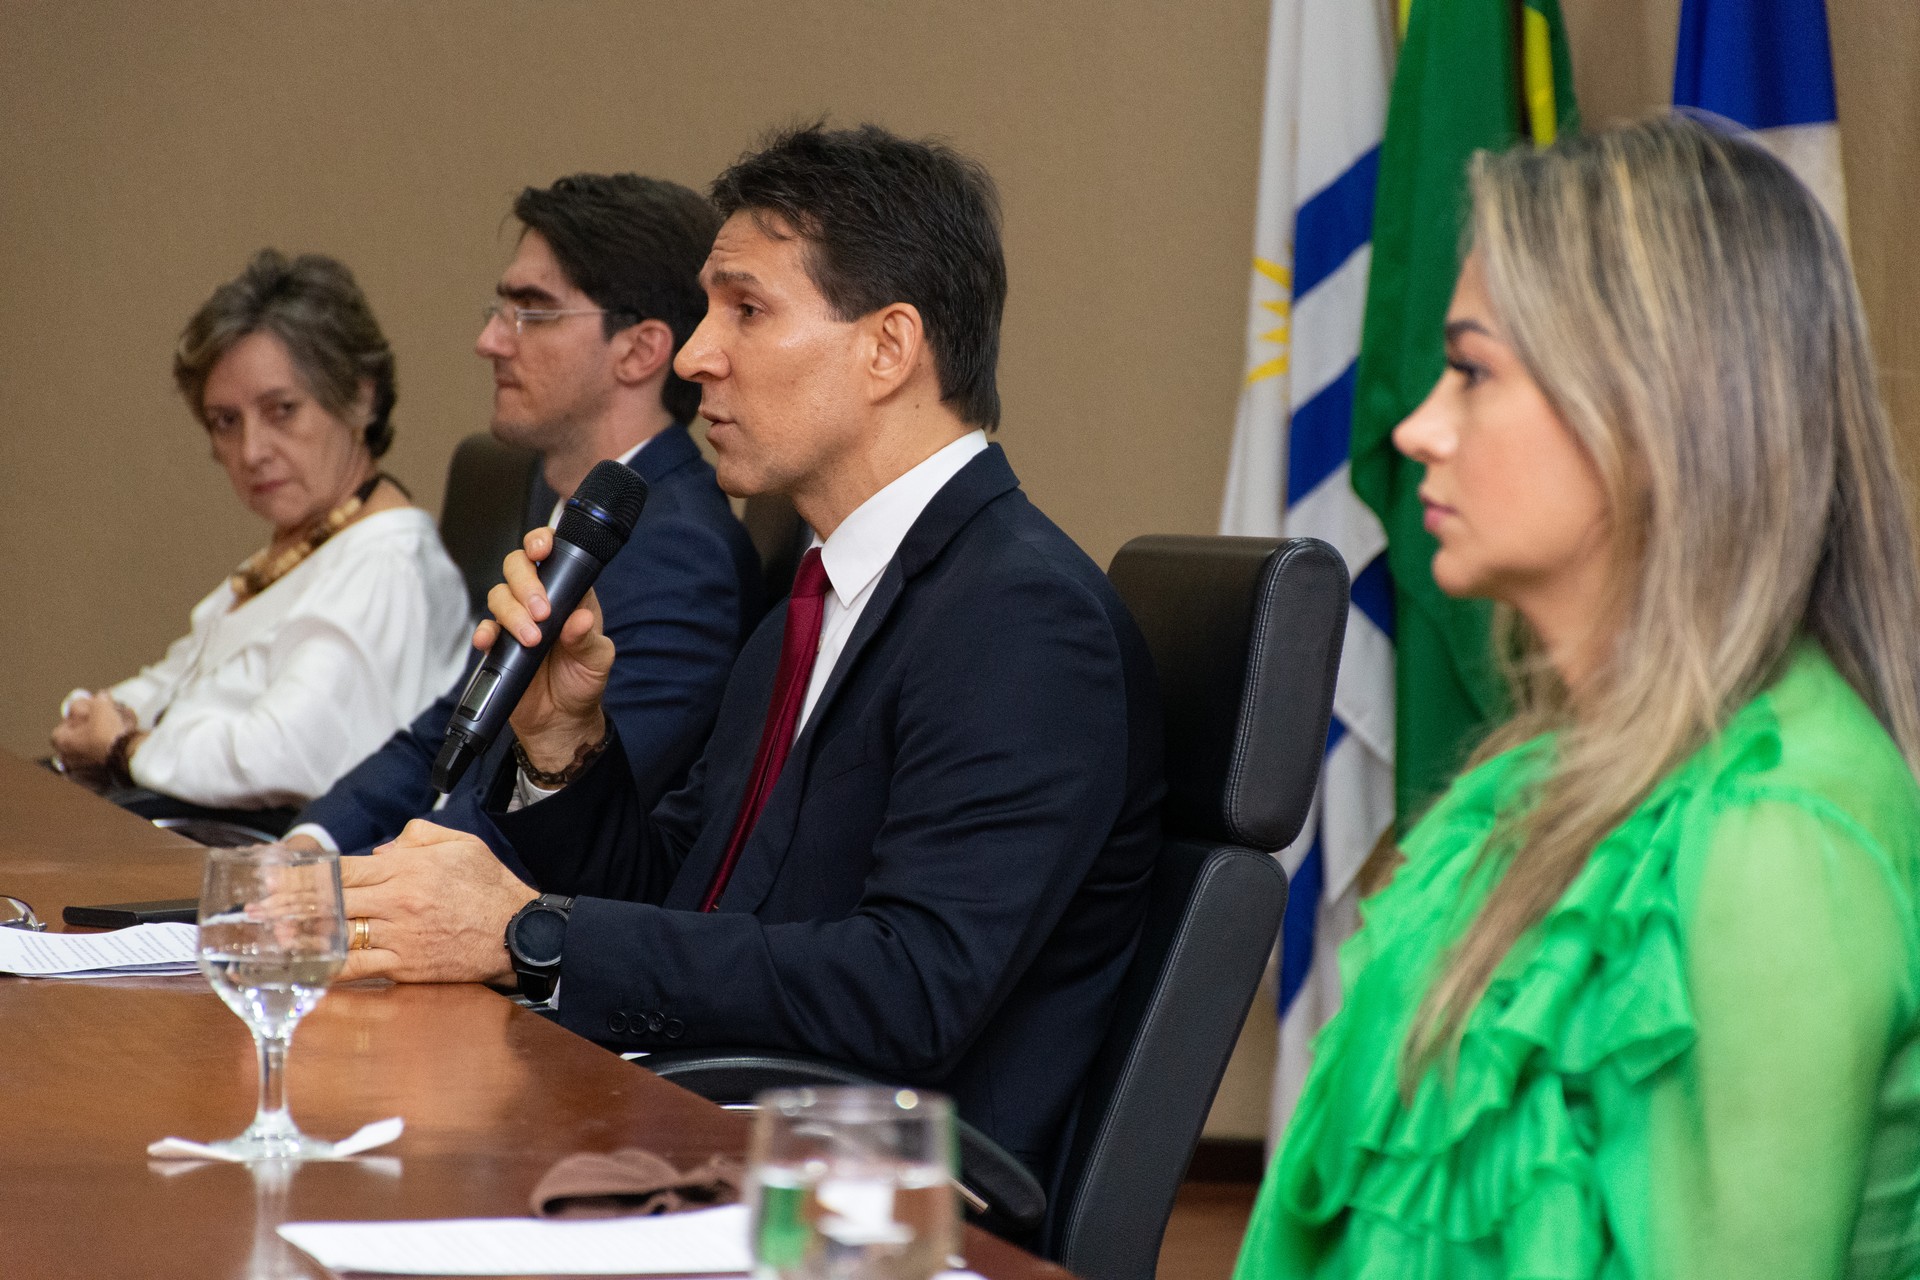 Na abertura do evento, o procurador de Justiça e coordenador do Fórum, José Maria da Silva Júnior, apresentou os objetivos e a metodologia do evento